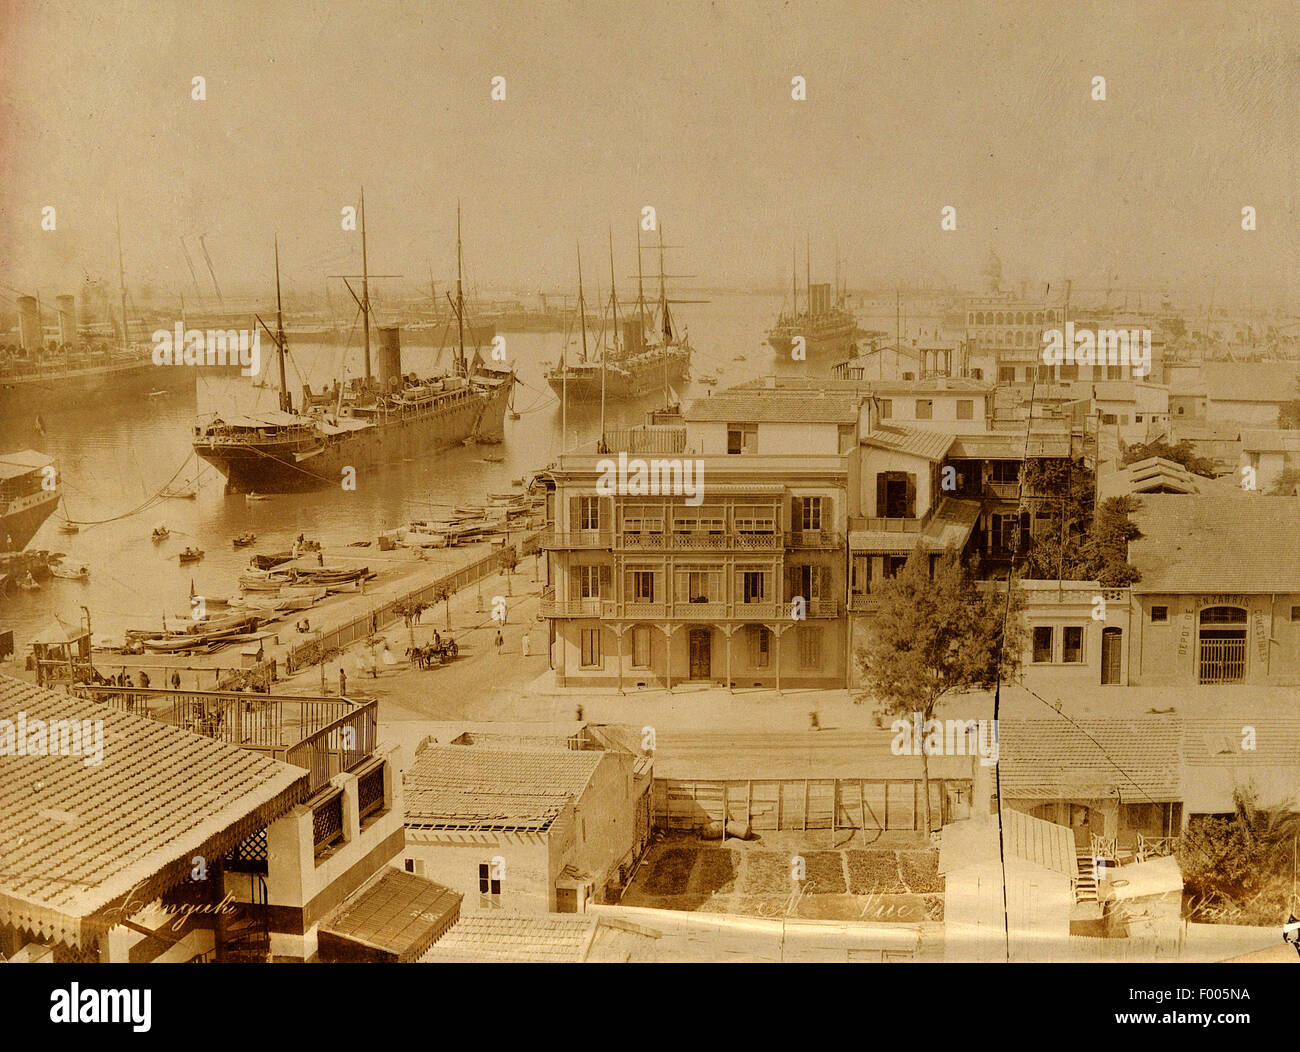 Port Said, Ägypten - 1880 s - Dampfschiffe vor Anker in Port Said, an der Mündung des Suez-Kanals am Mittelmeer, einen Blick auf den Hafen.   COPYRIGHT FOTOSAMMLUNG VON BARRY IVERSON Stockfoto